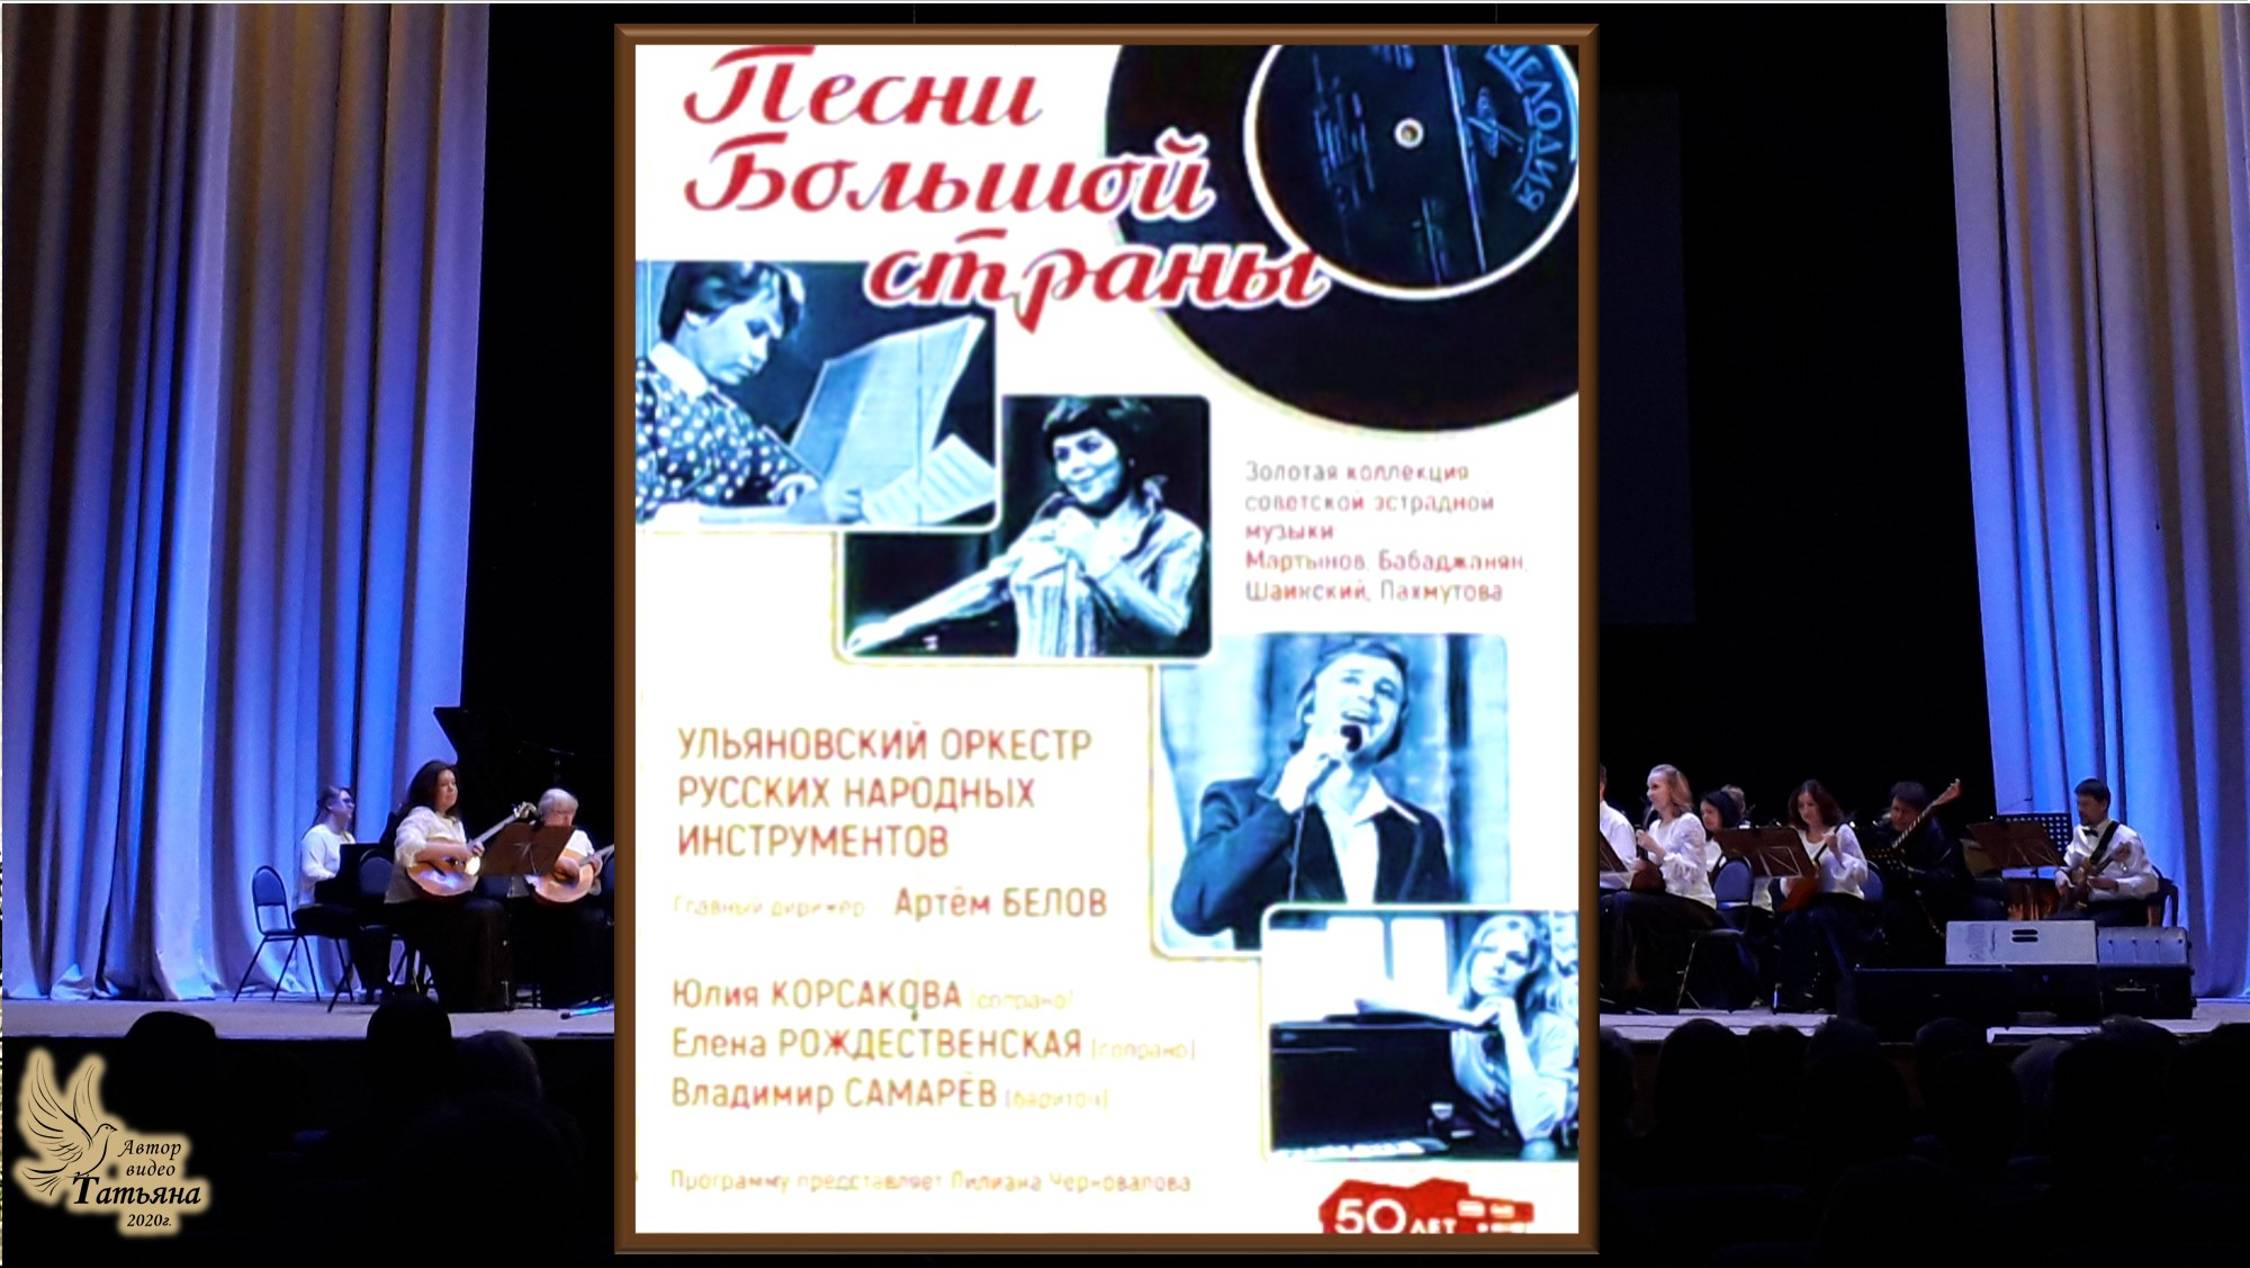 Концерт Ульяновского оркестра народных инструментов. 2020г